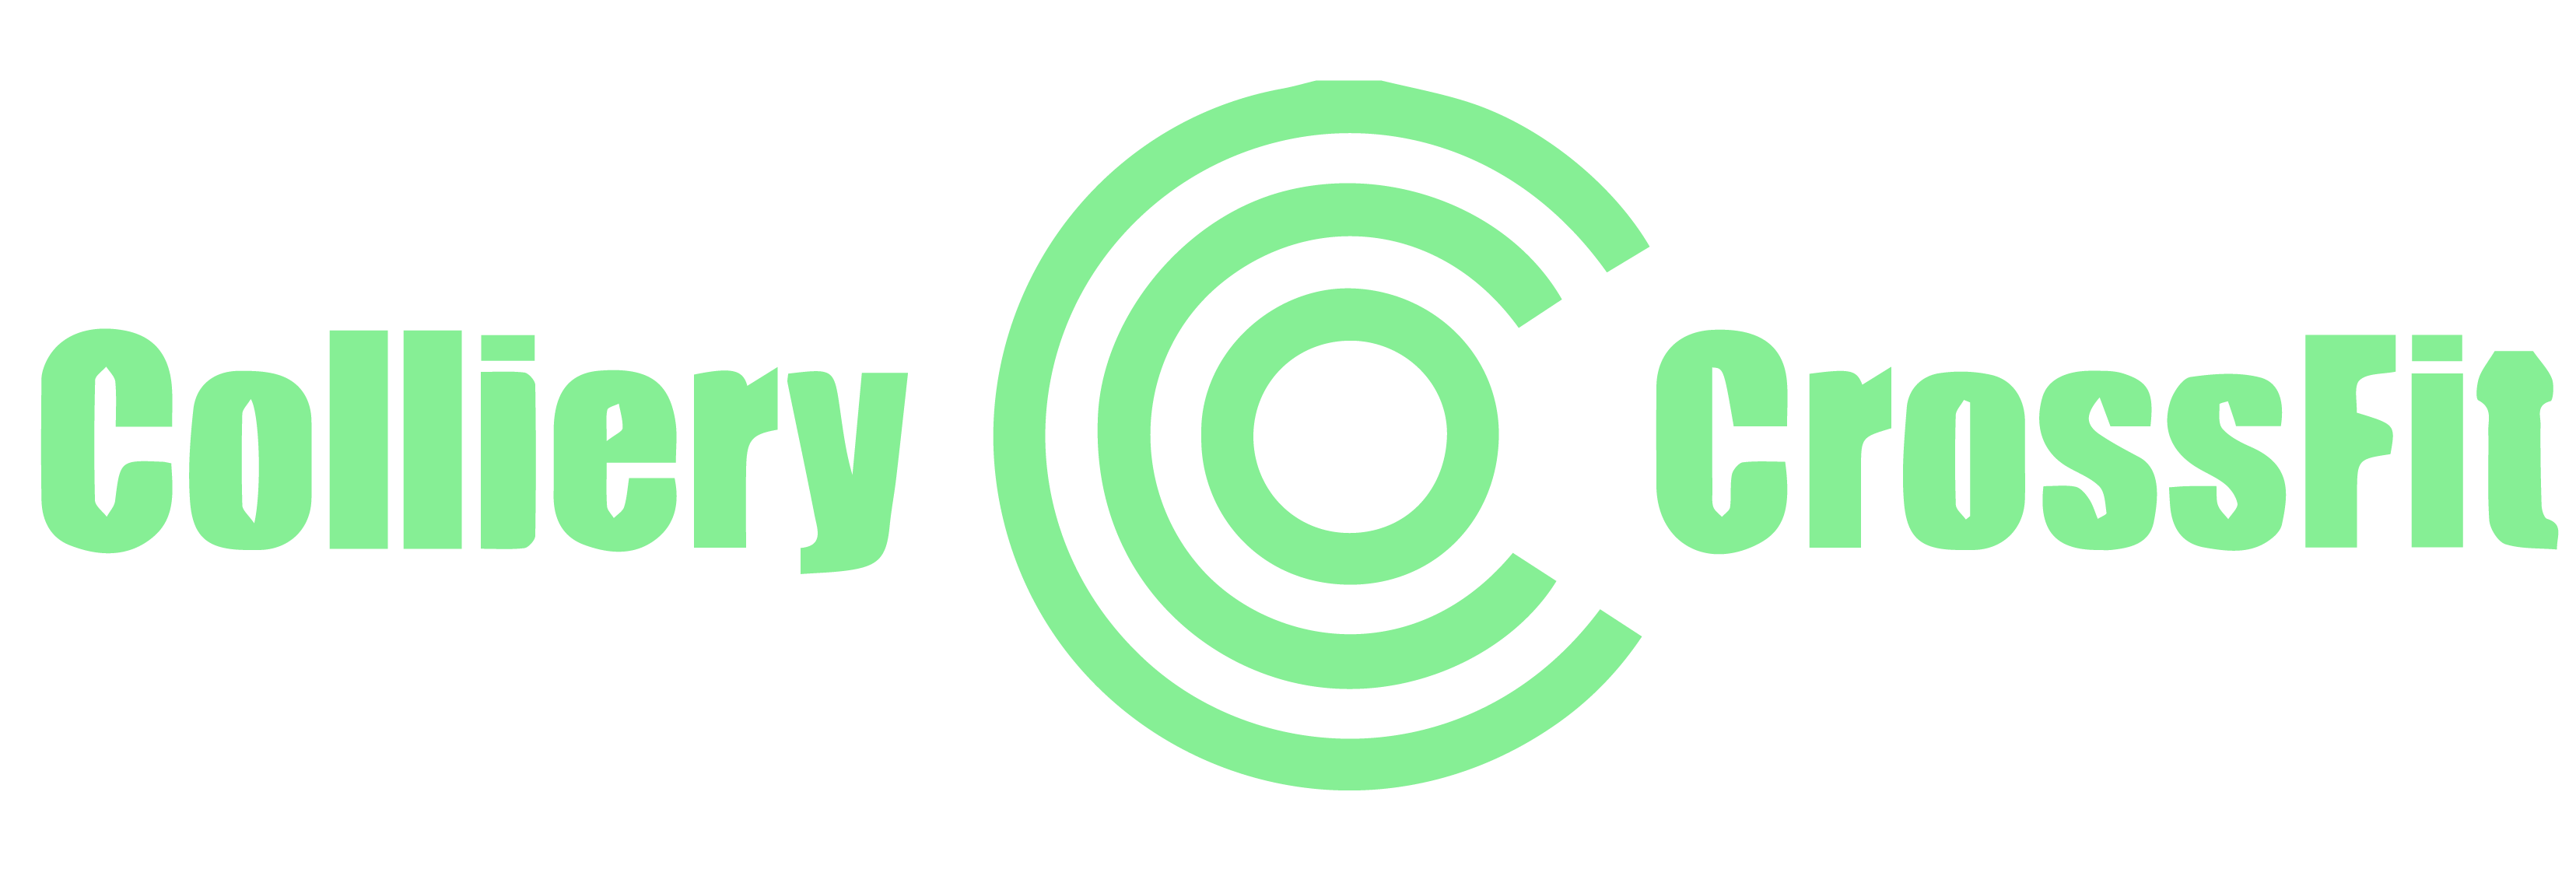 colliery crossfit logo zelene